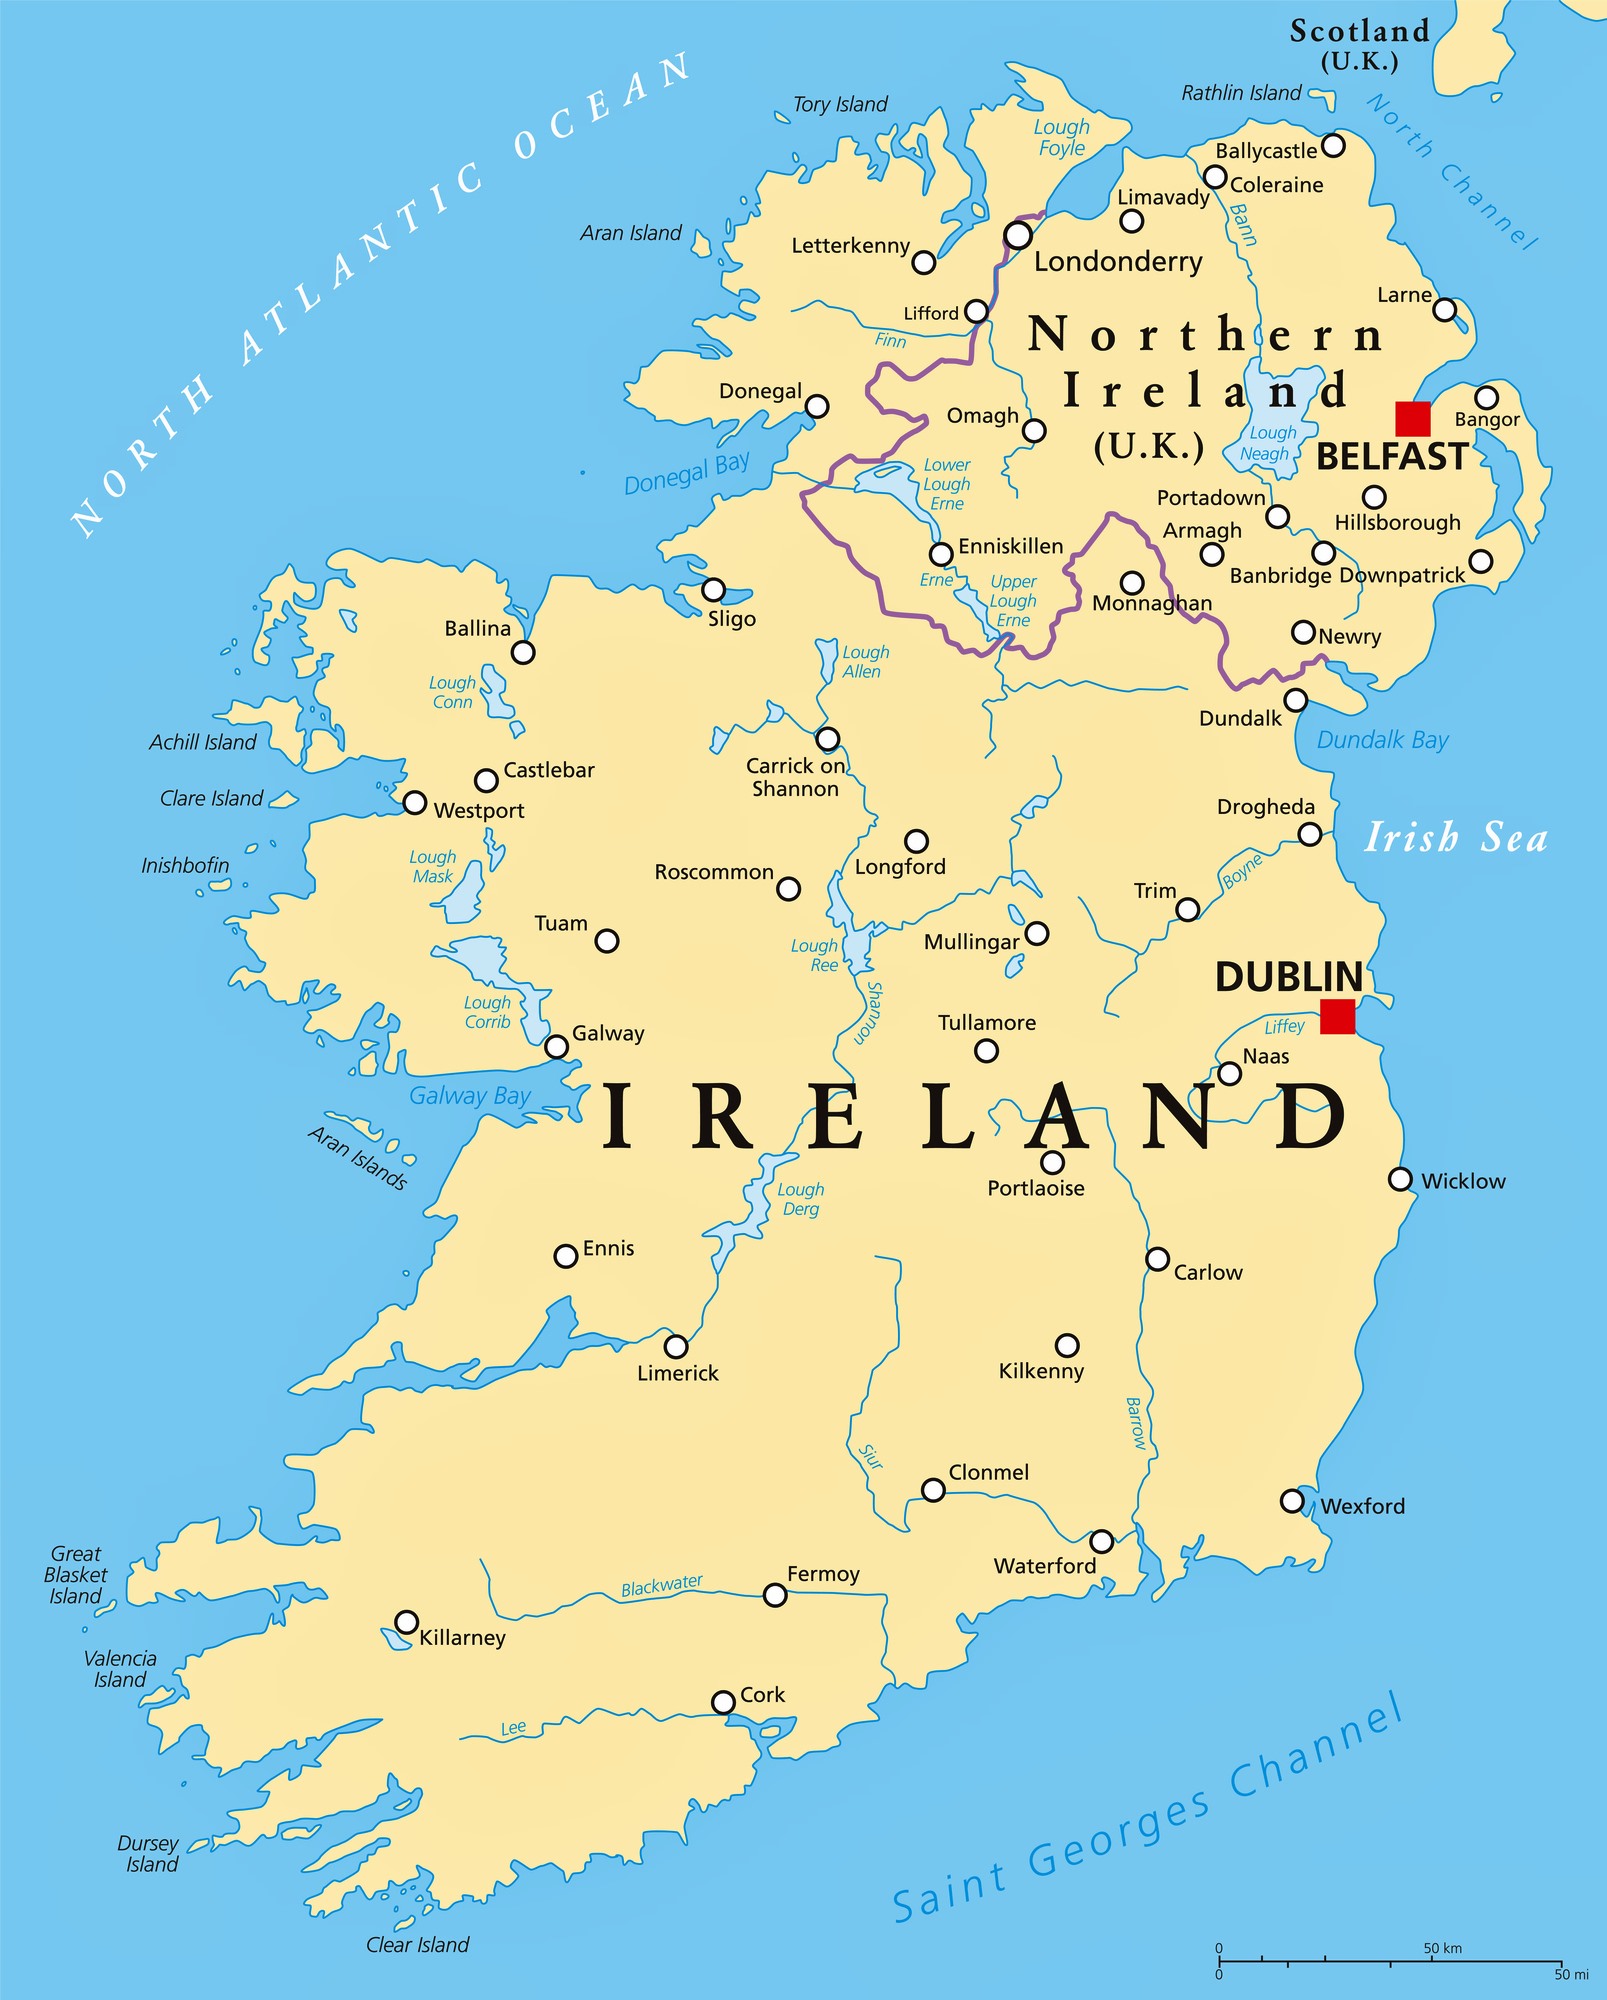 pub tours in ireland